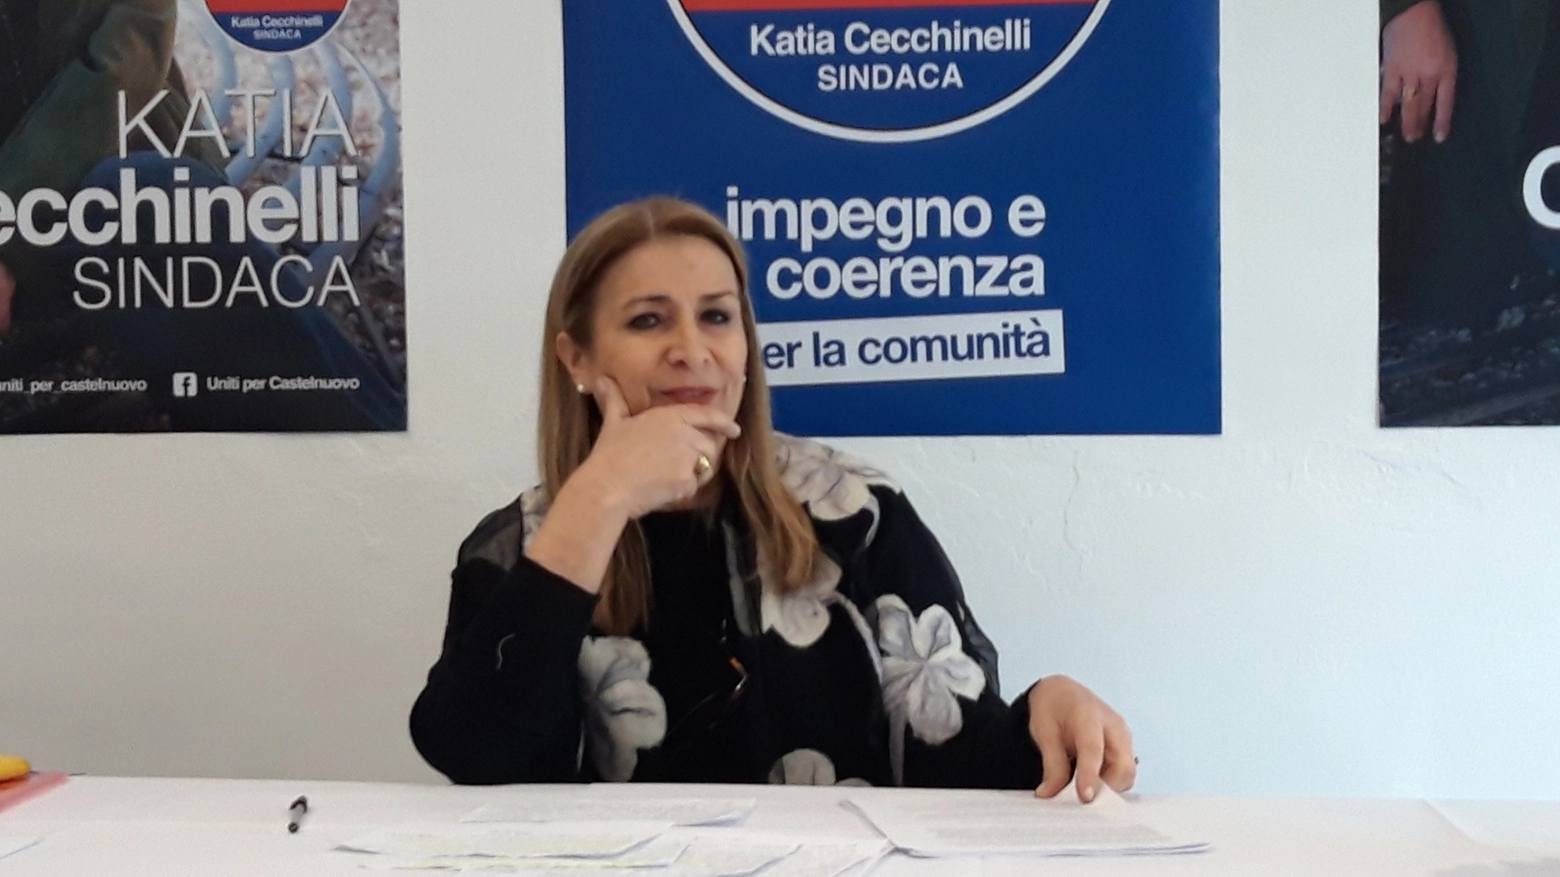 La candidata Katia Cecchinelli